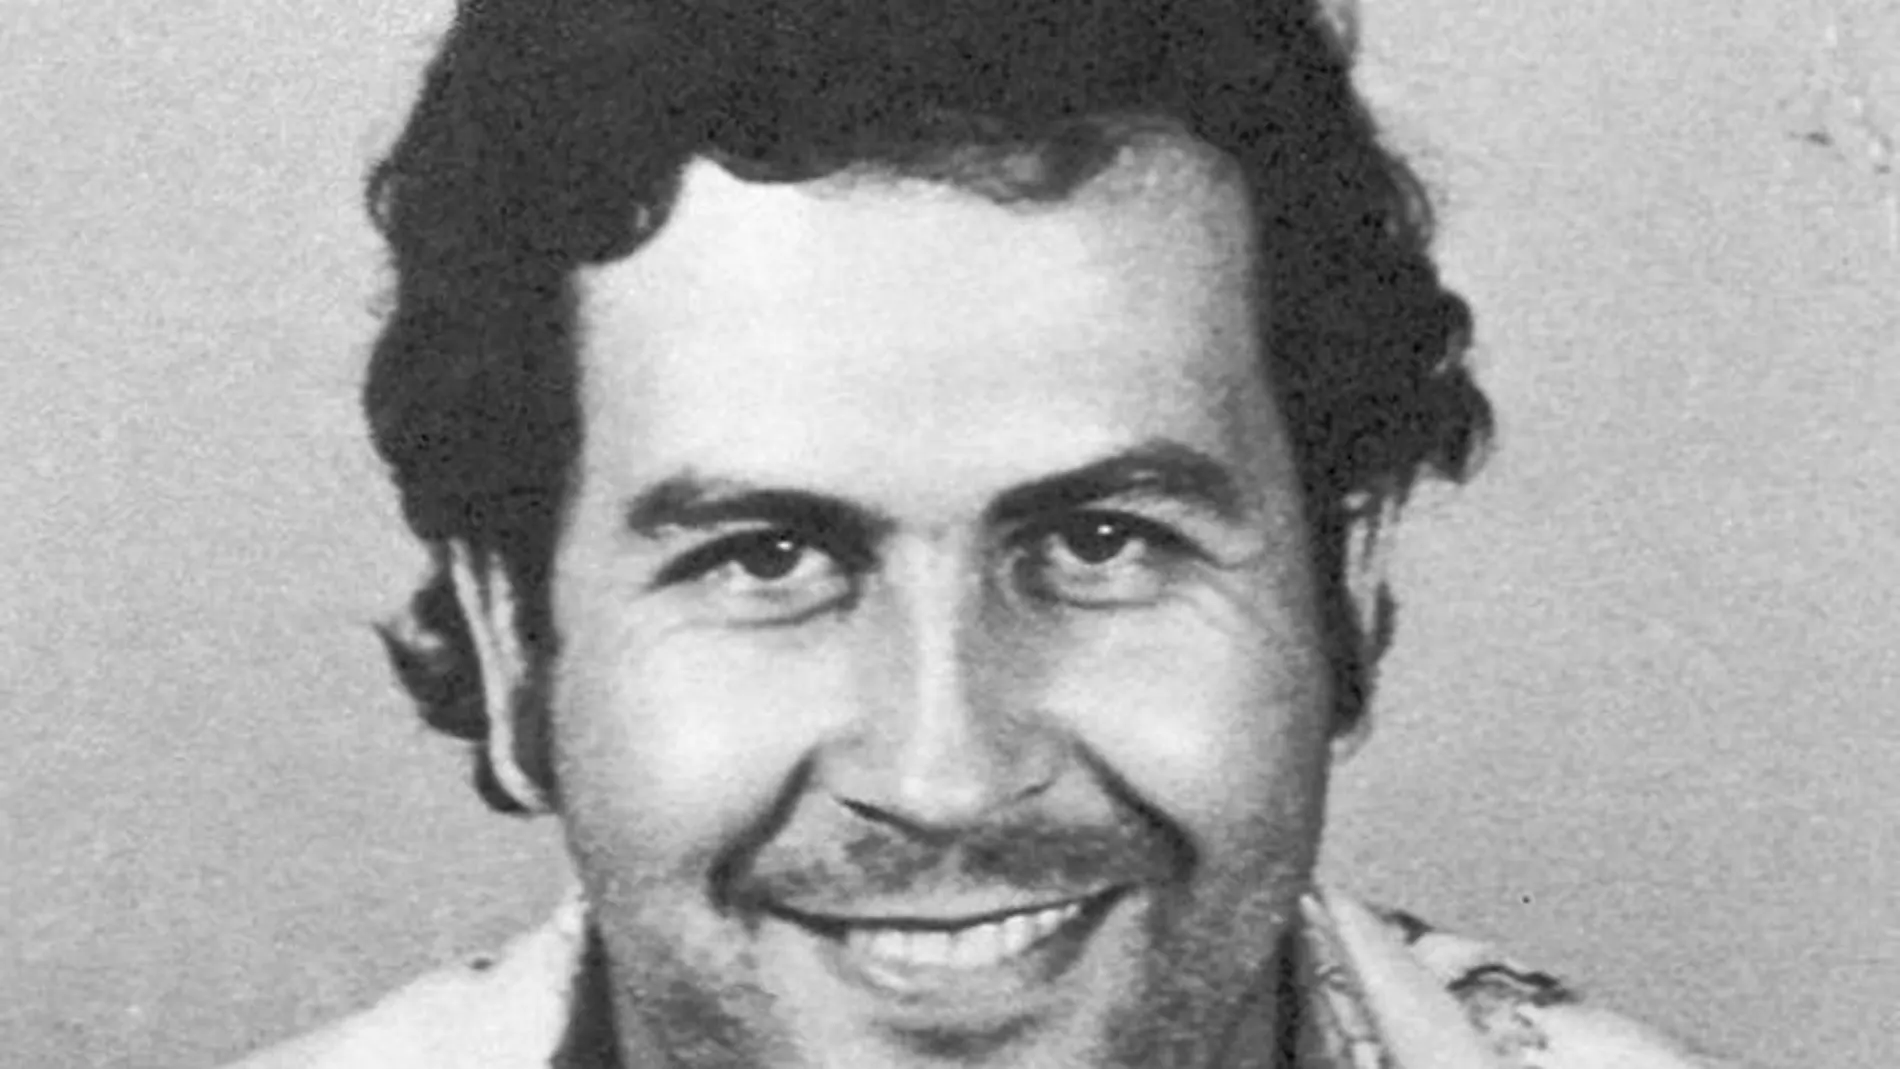 La franquicia Pablo Escobar